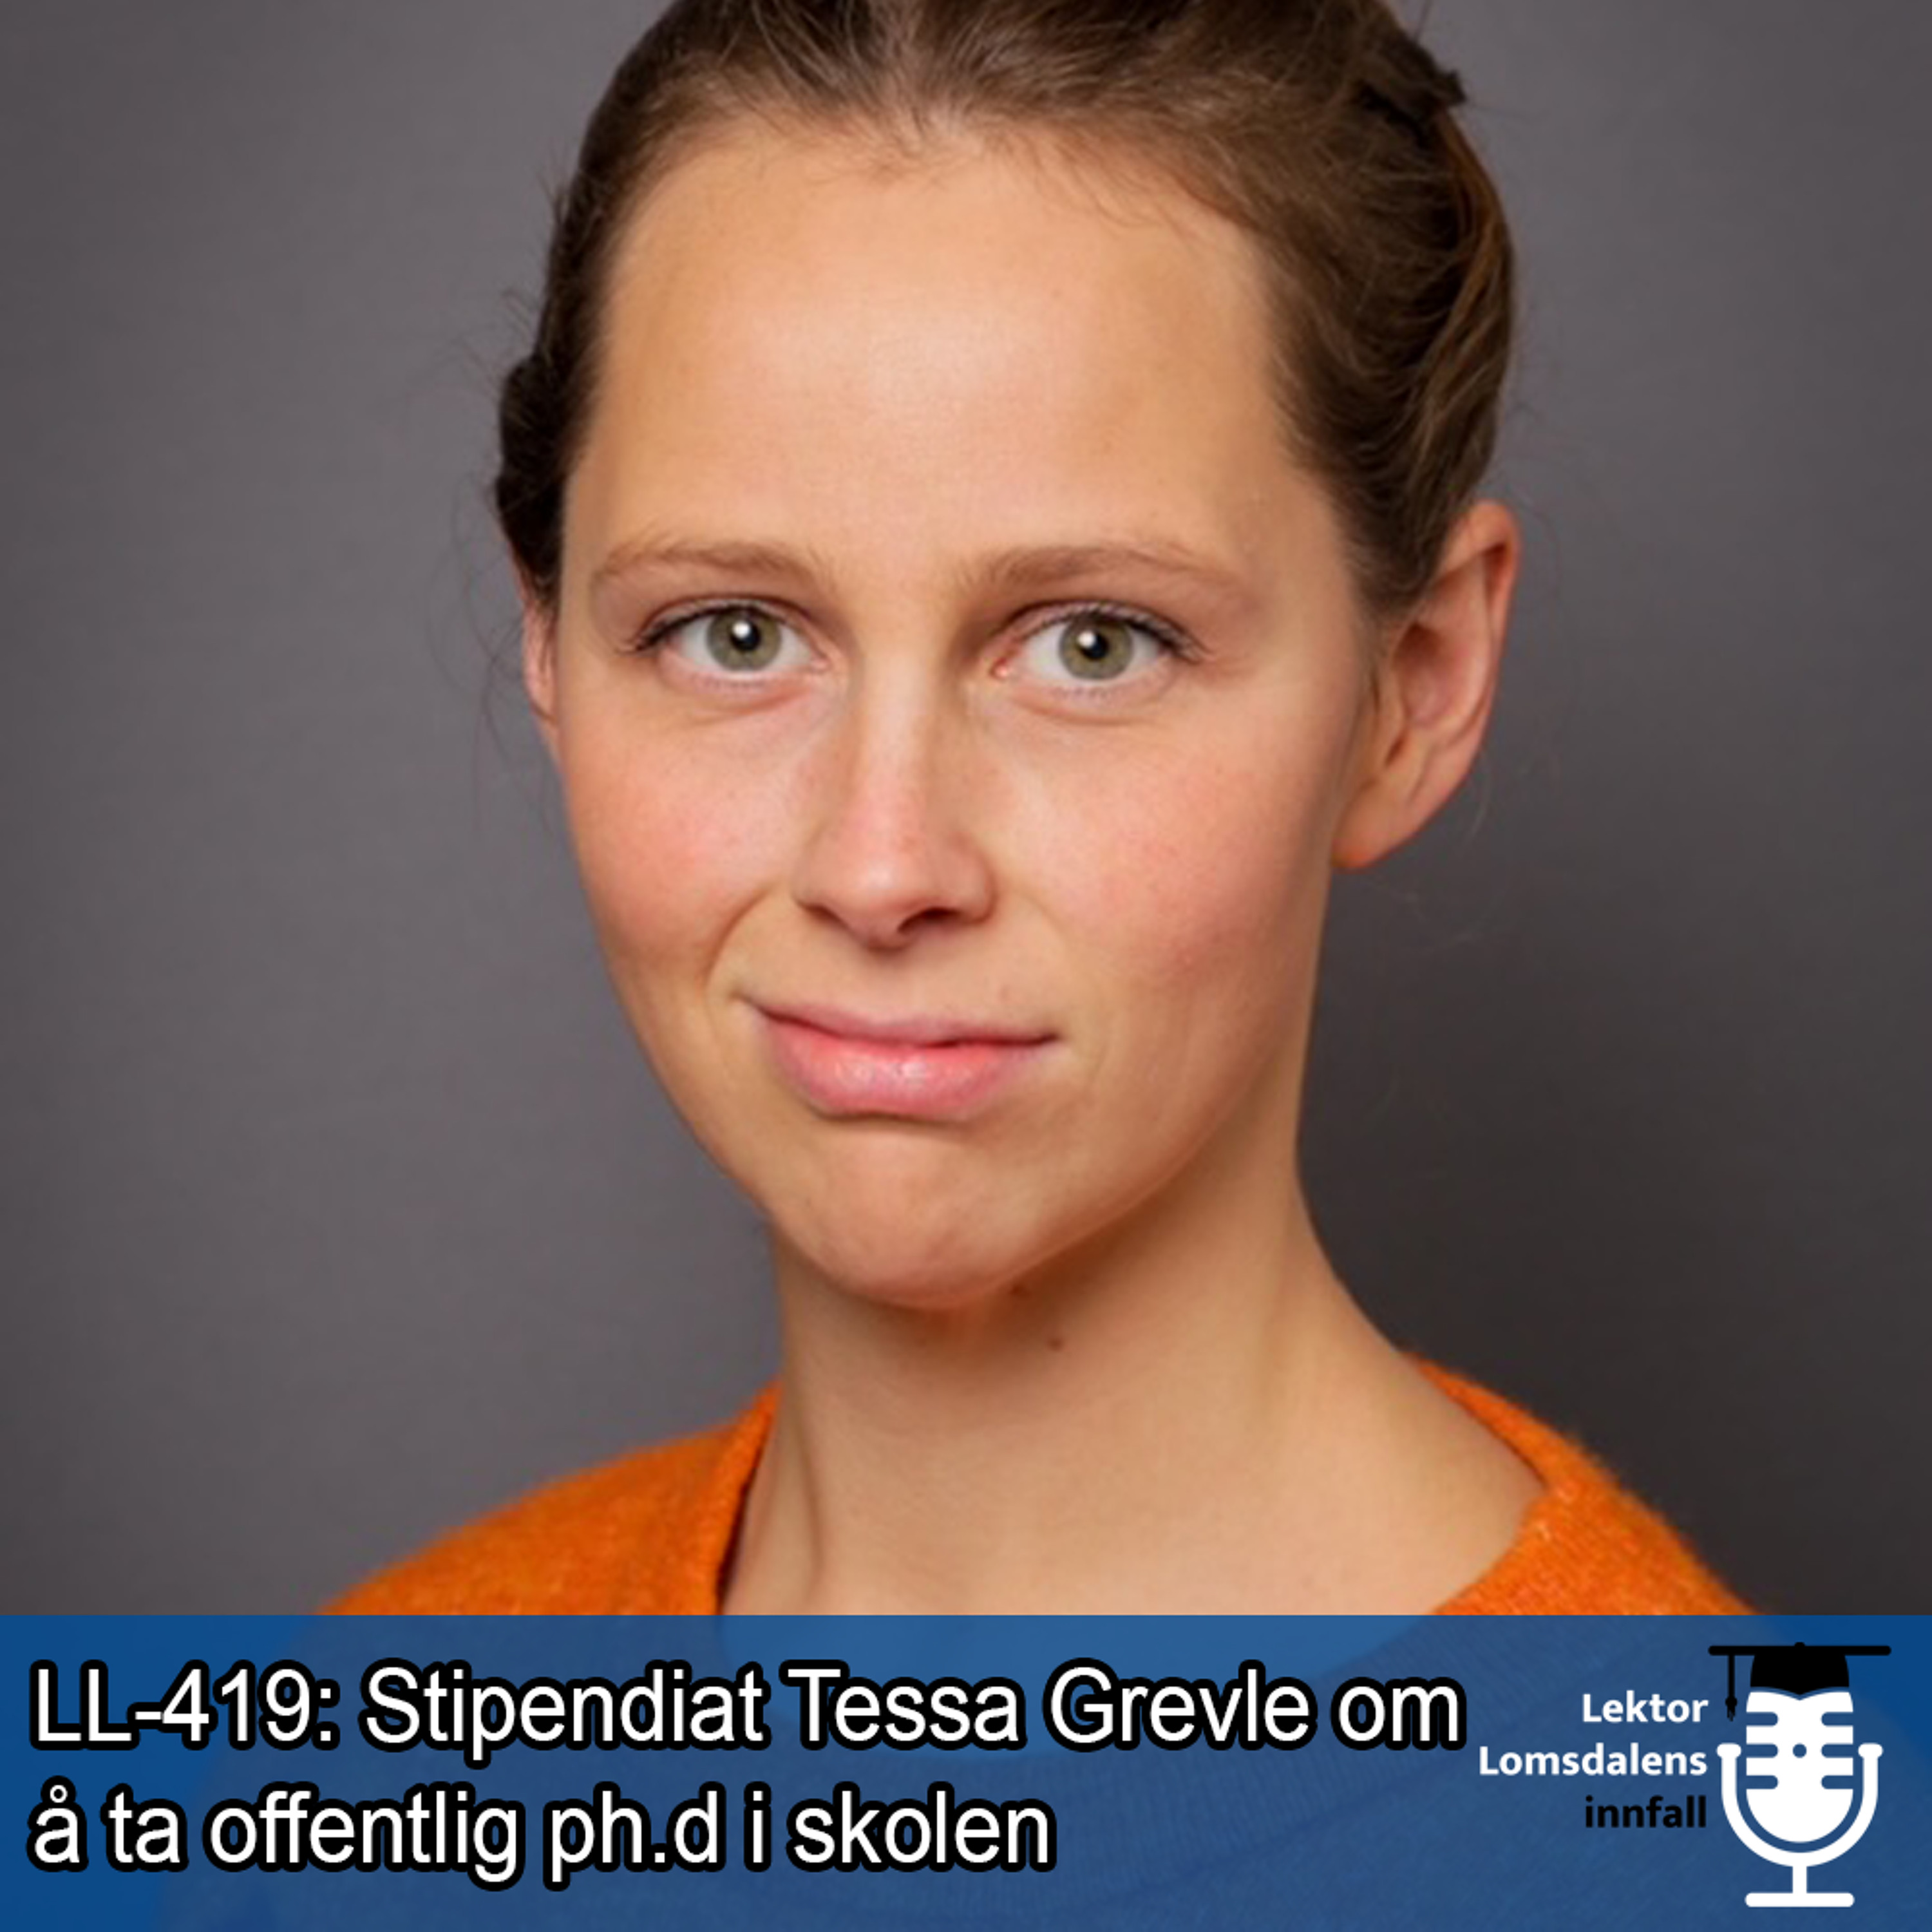 LL-419: Tessa Grevle om å ta en offentlig ph.d i skolen